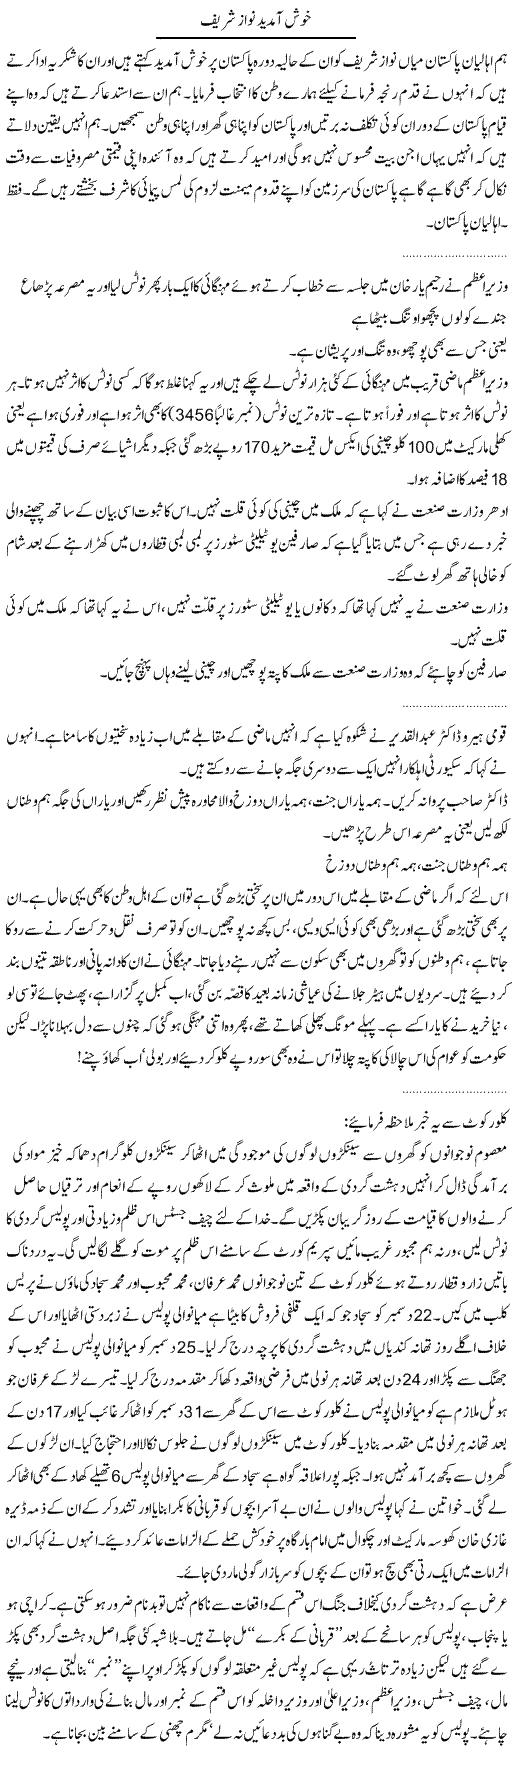 Khush Amdeed Nawaz Sharif Express Column Abdullah Tariq 26 jan 2010